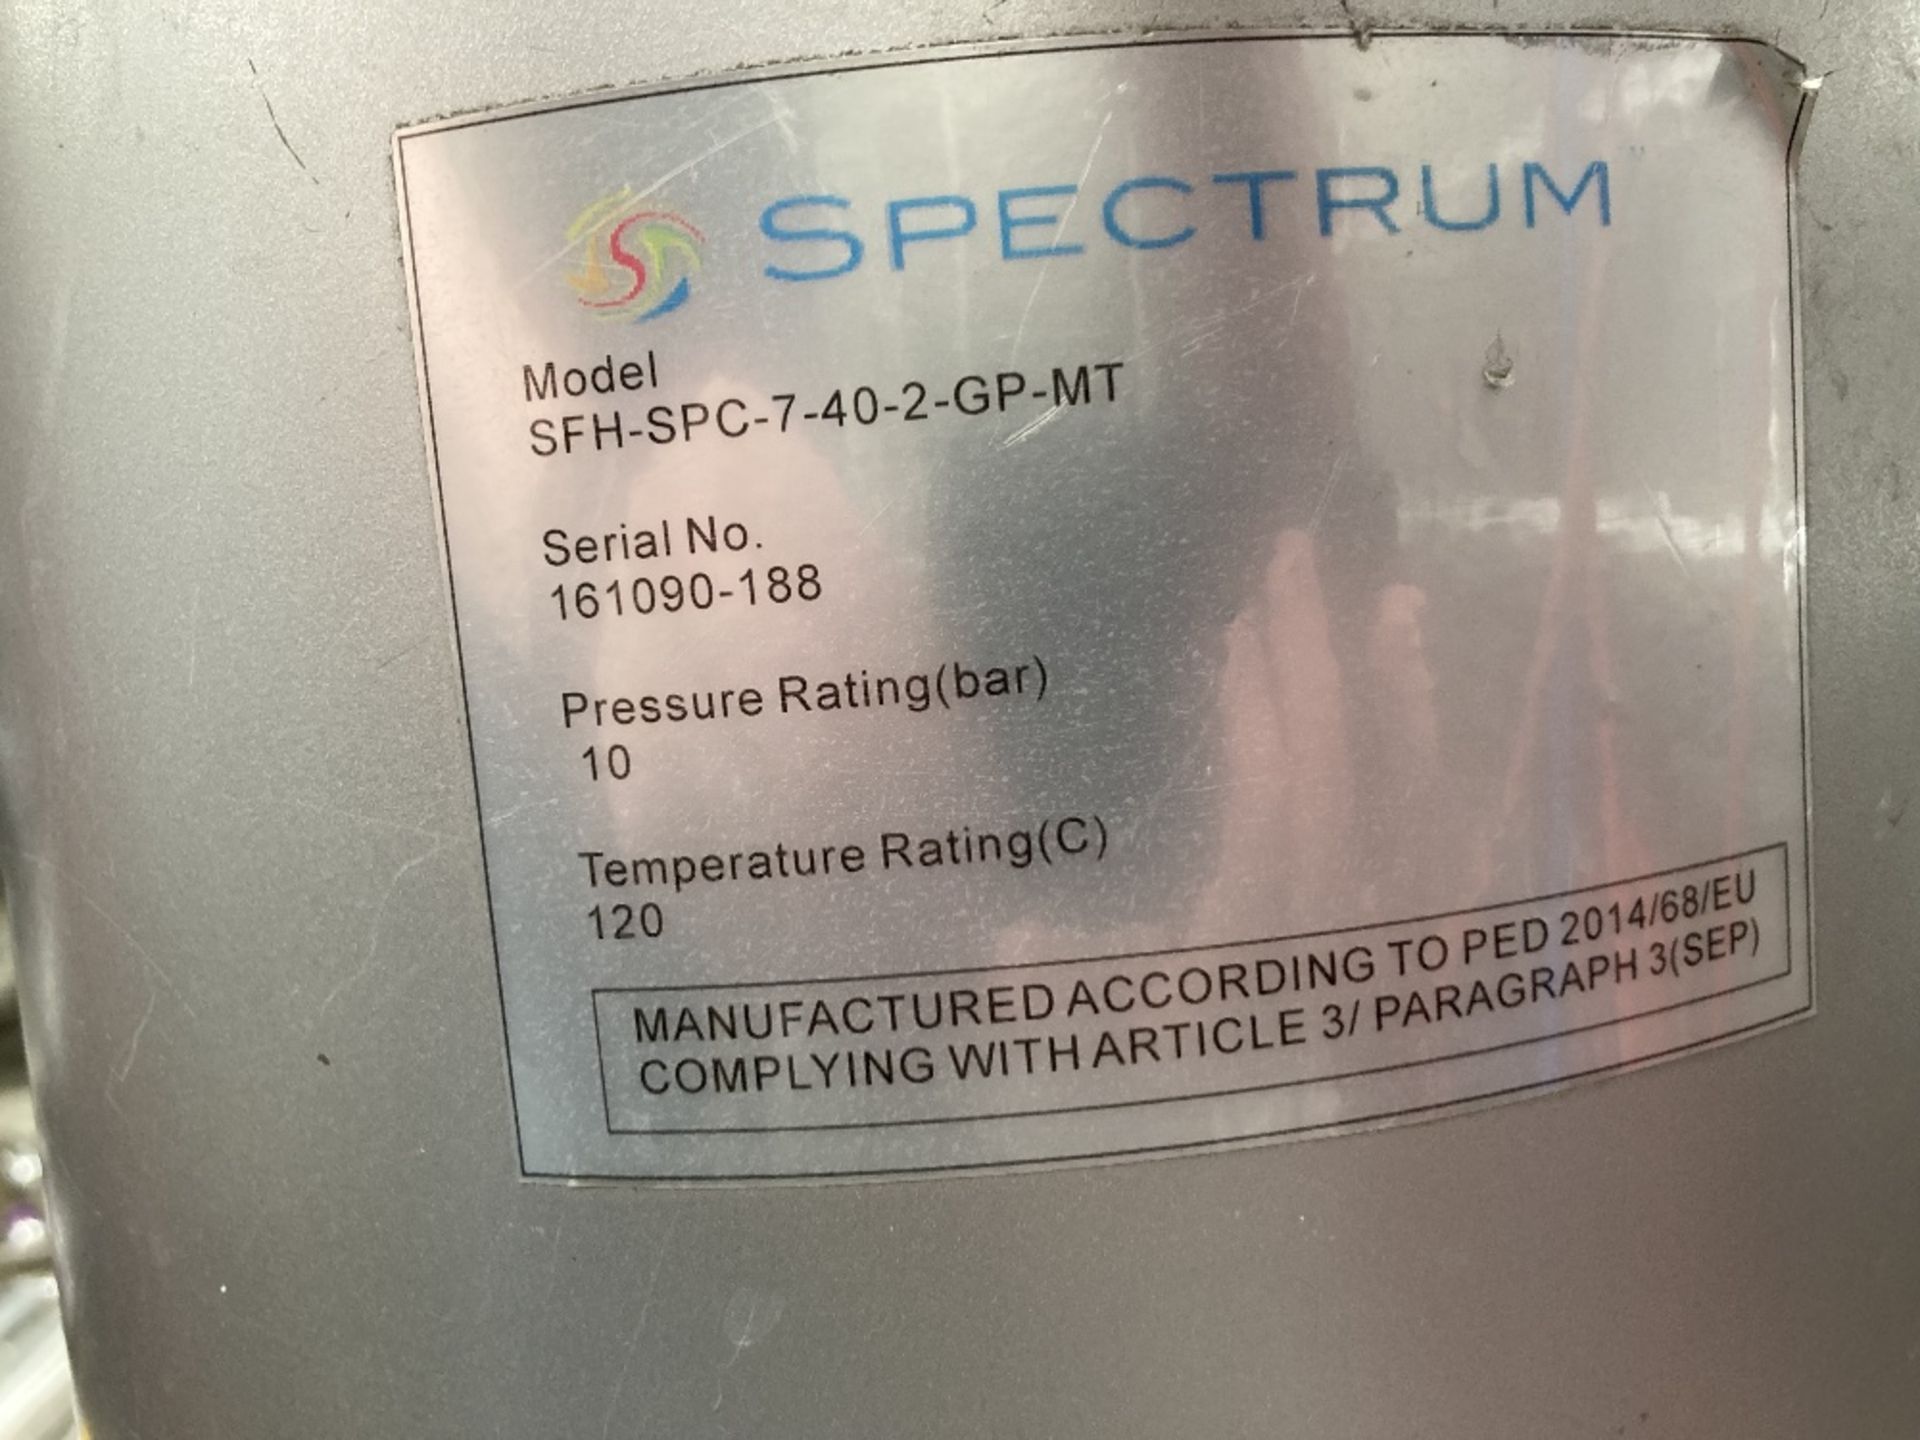 Spectrum SFH- SPC-7-40-2-GP-MT Filter - Image 6 of 6